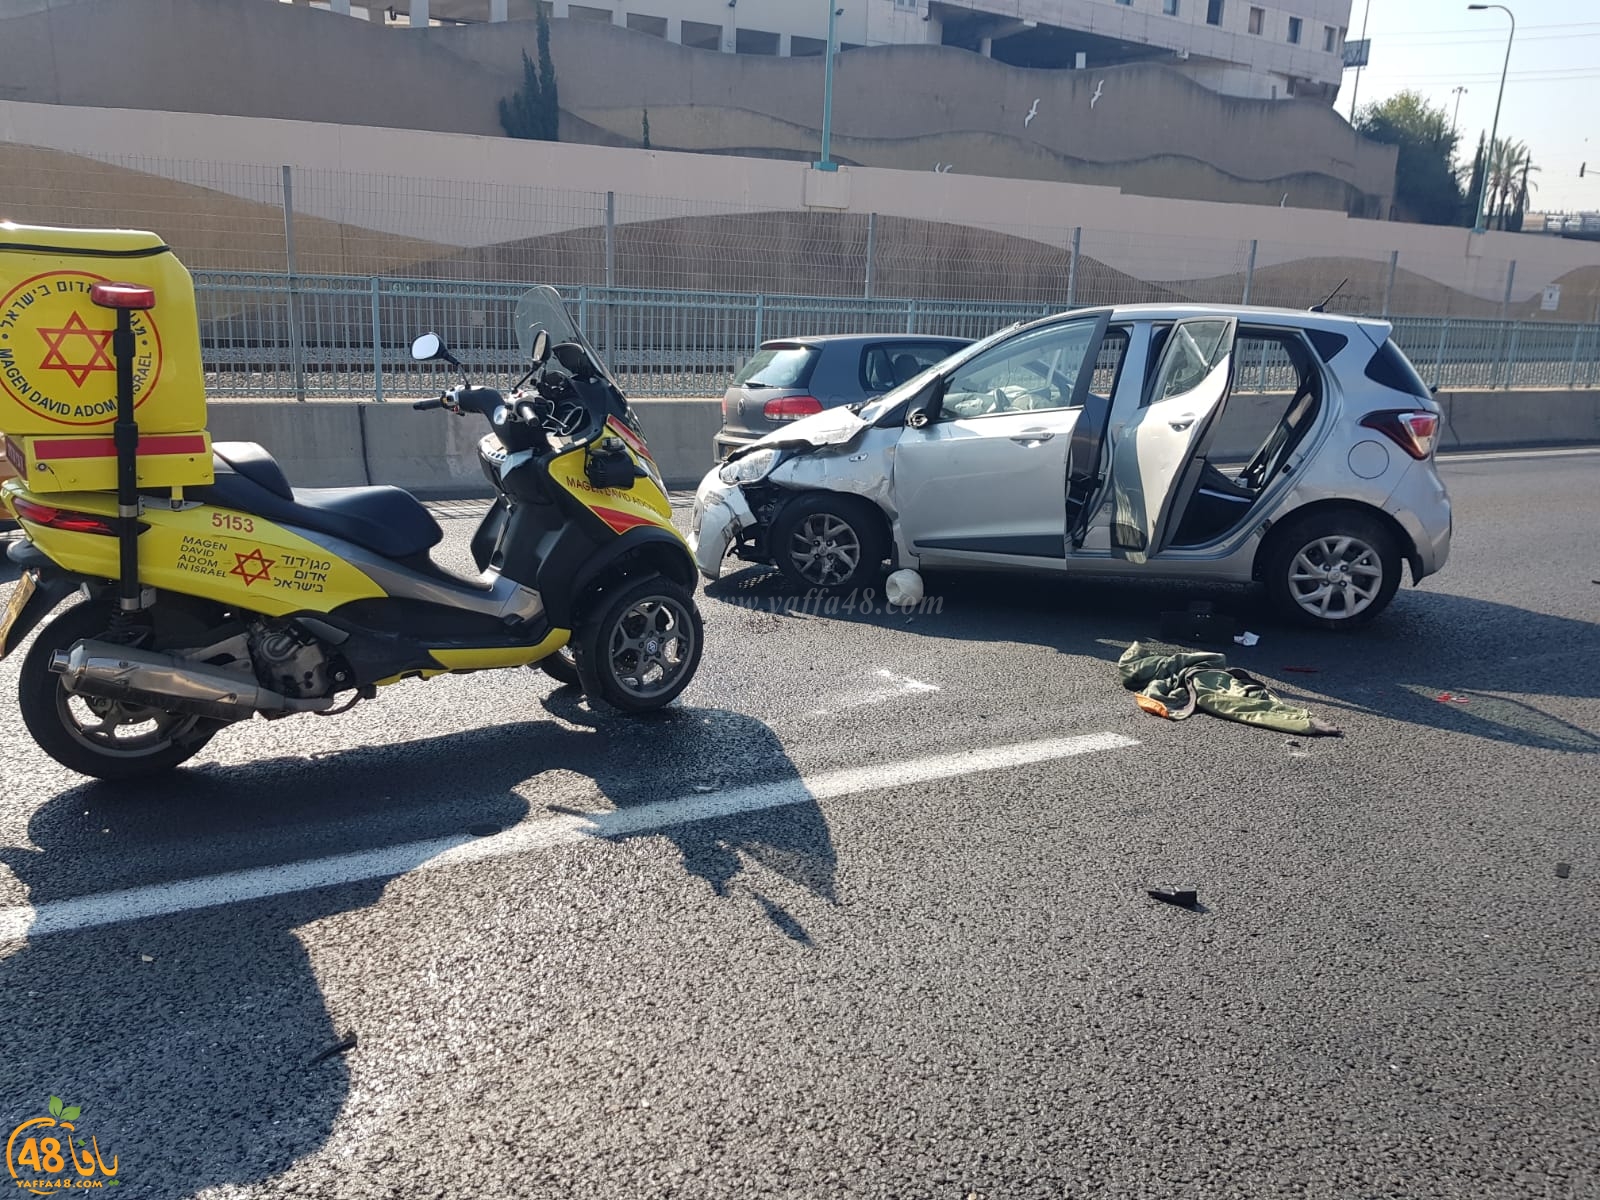  اصابة طفيفة لشخصين بحادث طرق قرب مفرق فولفسون جنوب يافا